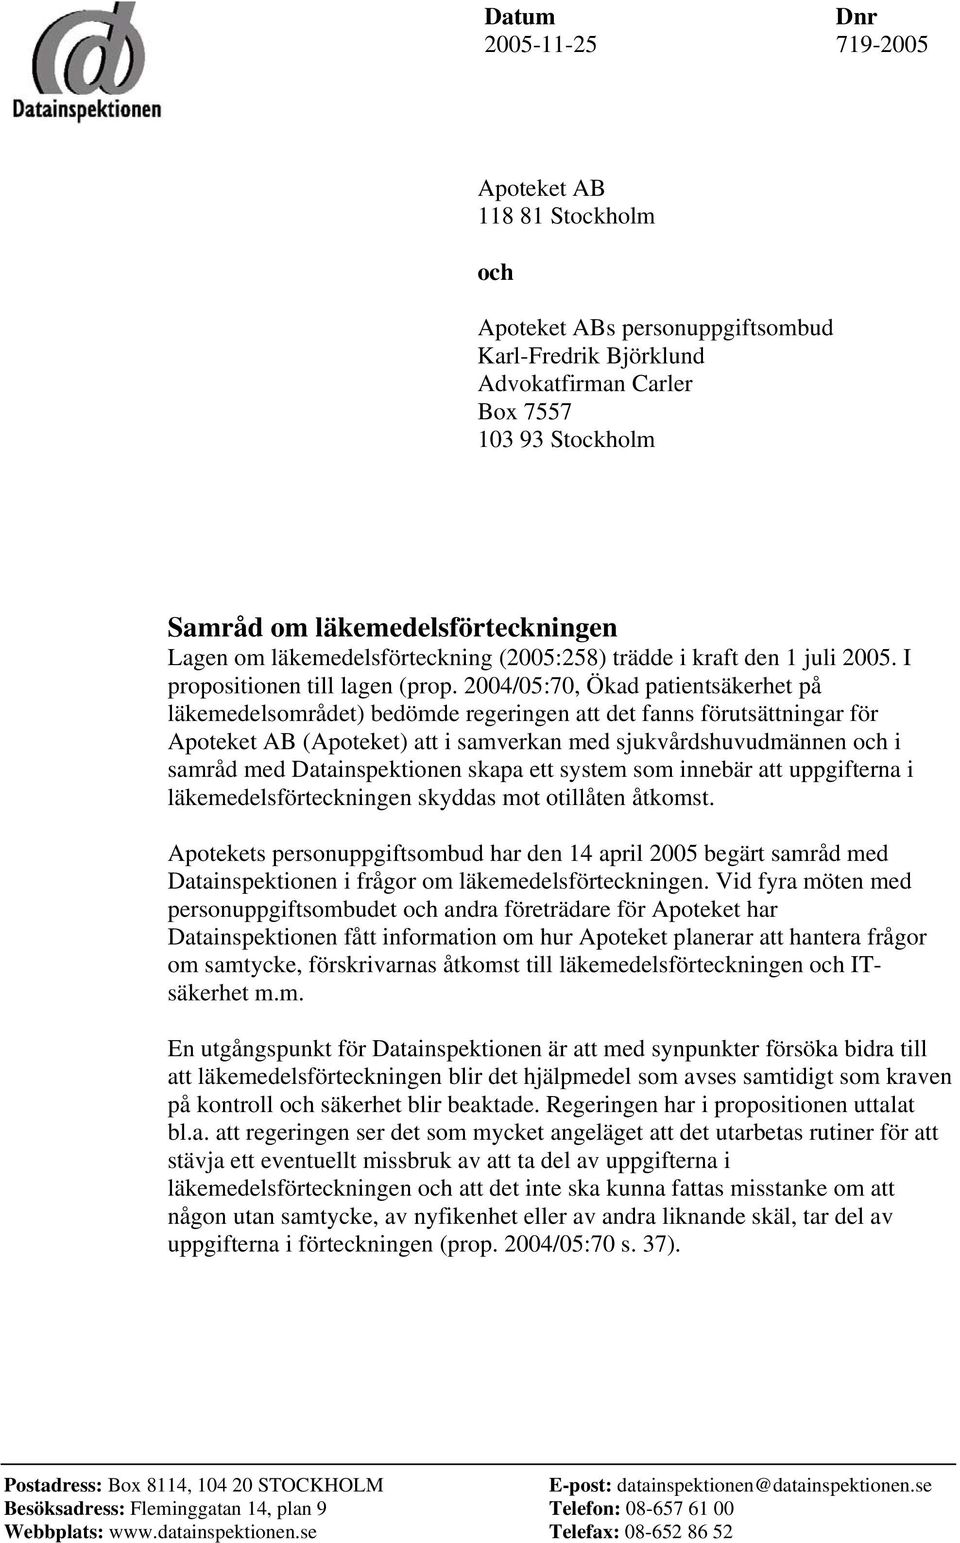 2004/05:70, Ökad patientsäkerhet på läkemedelsområdet) bedömde regeringen att det fanns förutsättningar för Apoteket AB (Apoteket) att i samverkan med sjukvårdshuvudmännen och i samråd med